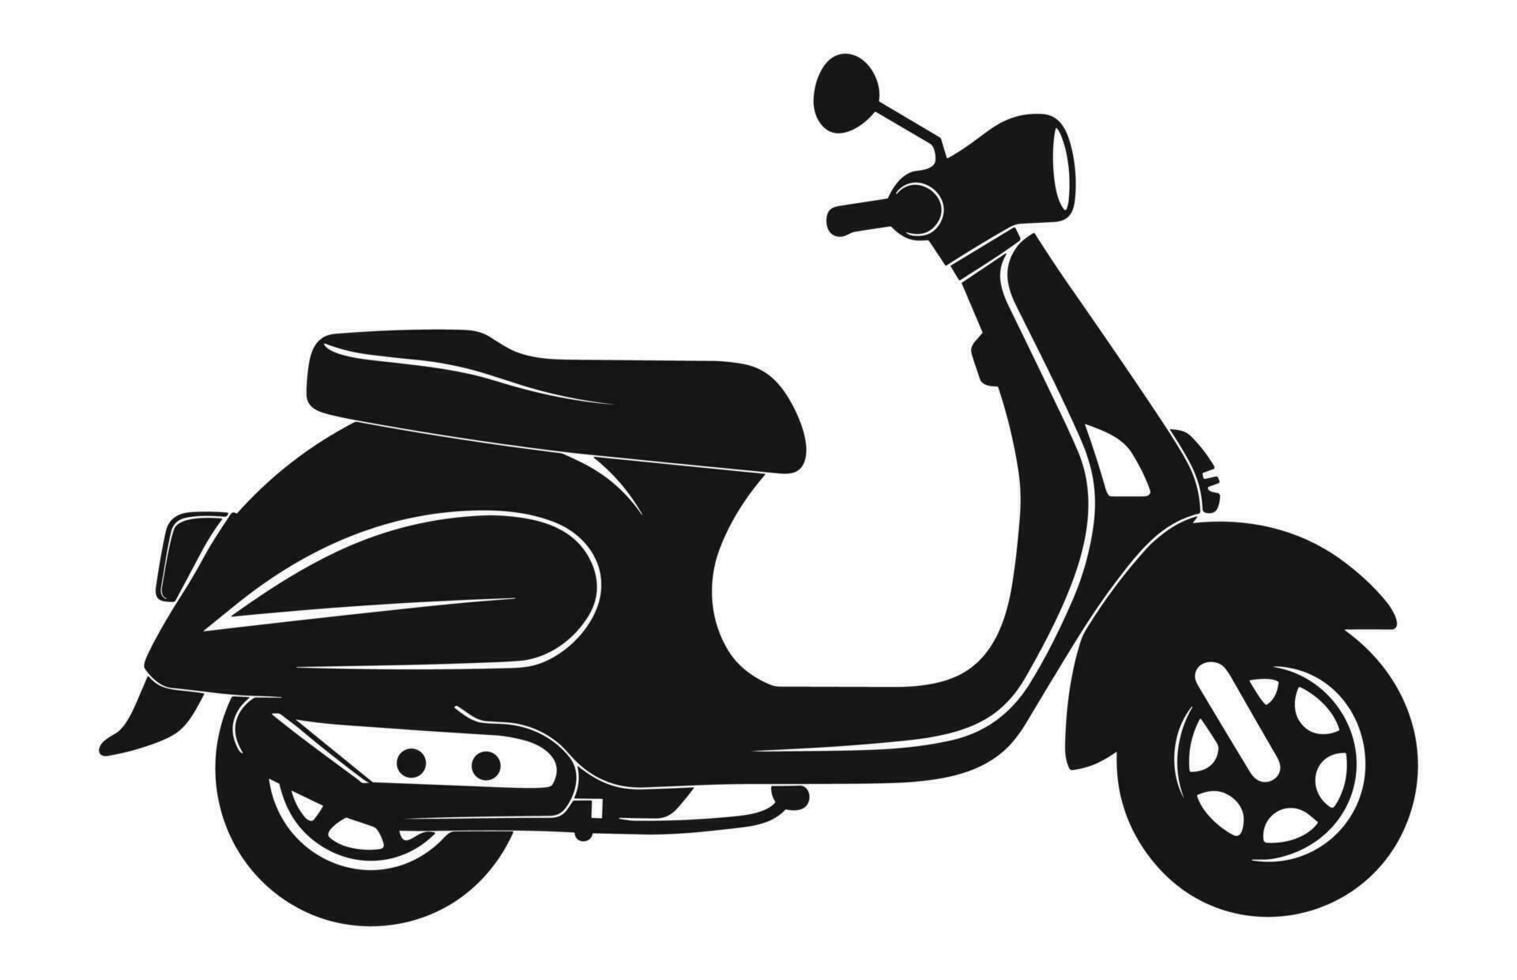 en motorcykel skoter vektor svart silhuett isolerat på en vit bakgrund